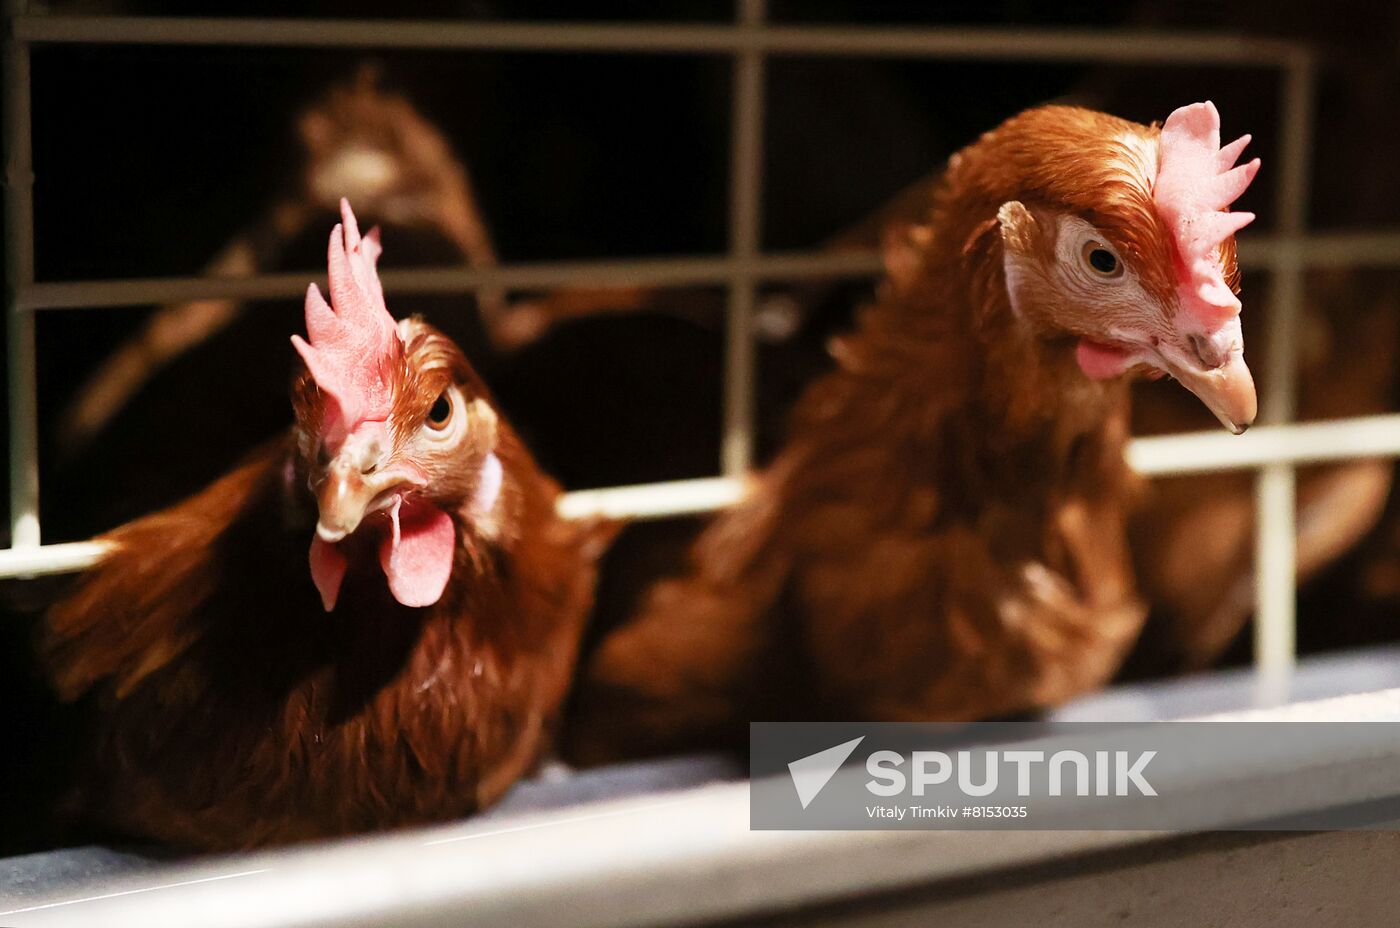 Labinsky Pedigree Poultry Breeding Plant in Krasnodar Territory